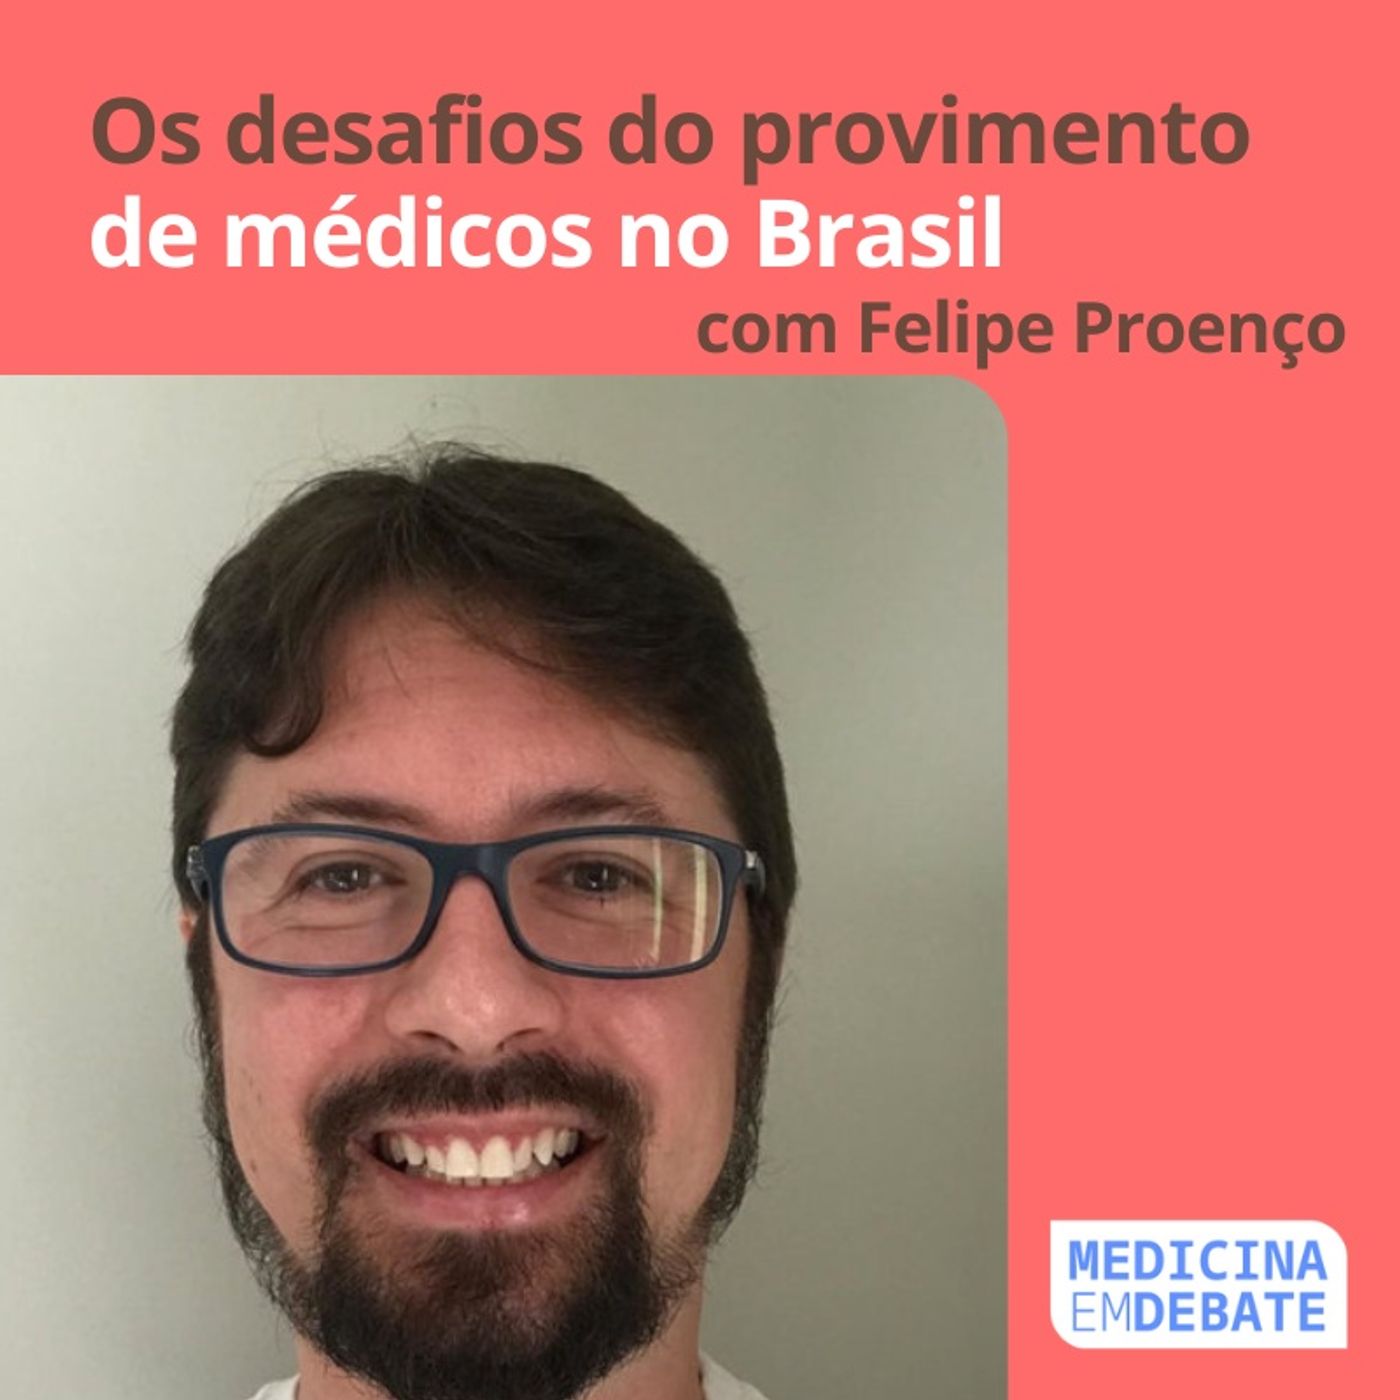 O desafio do provimento de médicos no Brasil